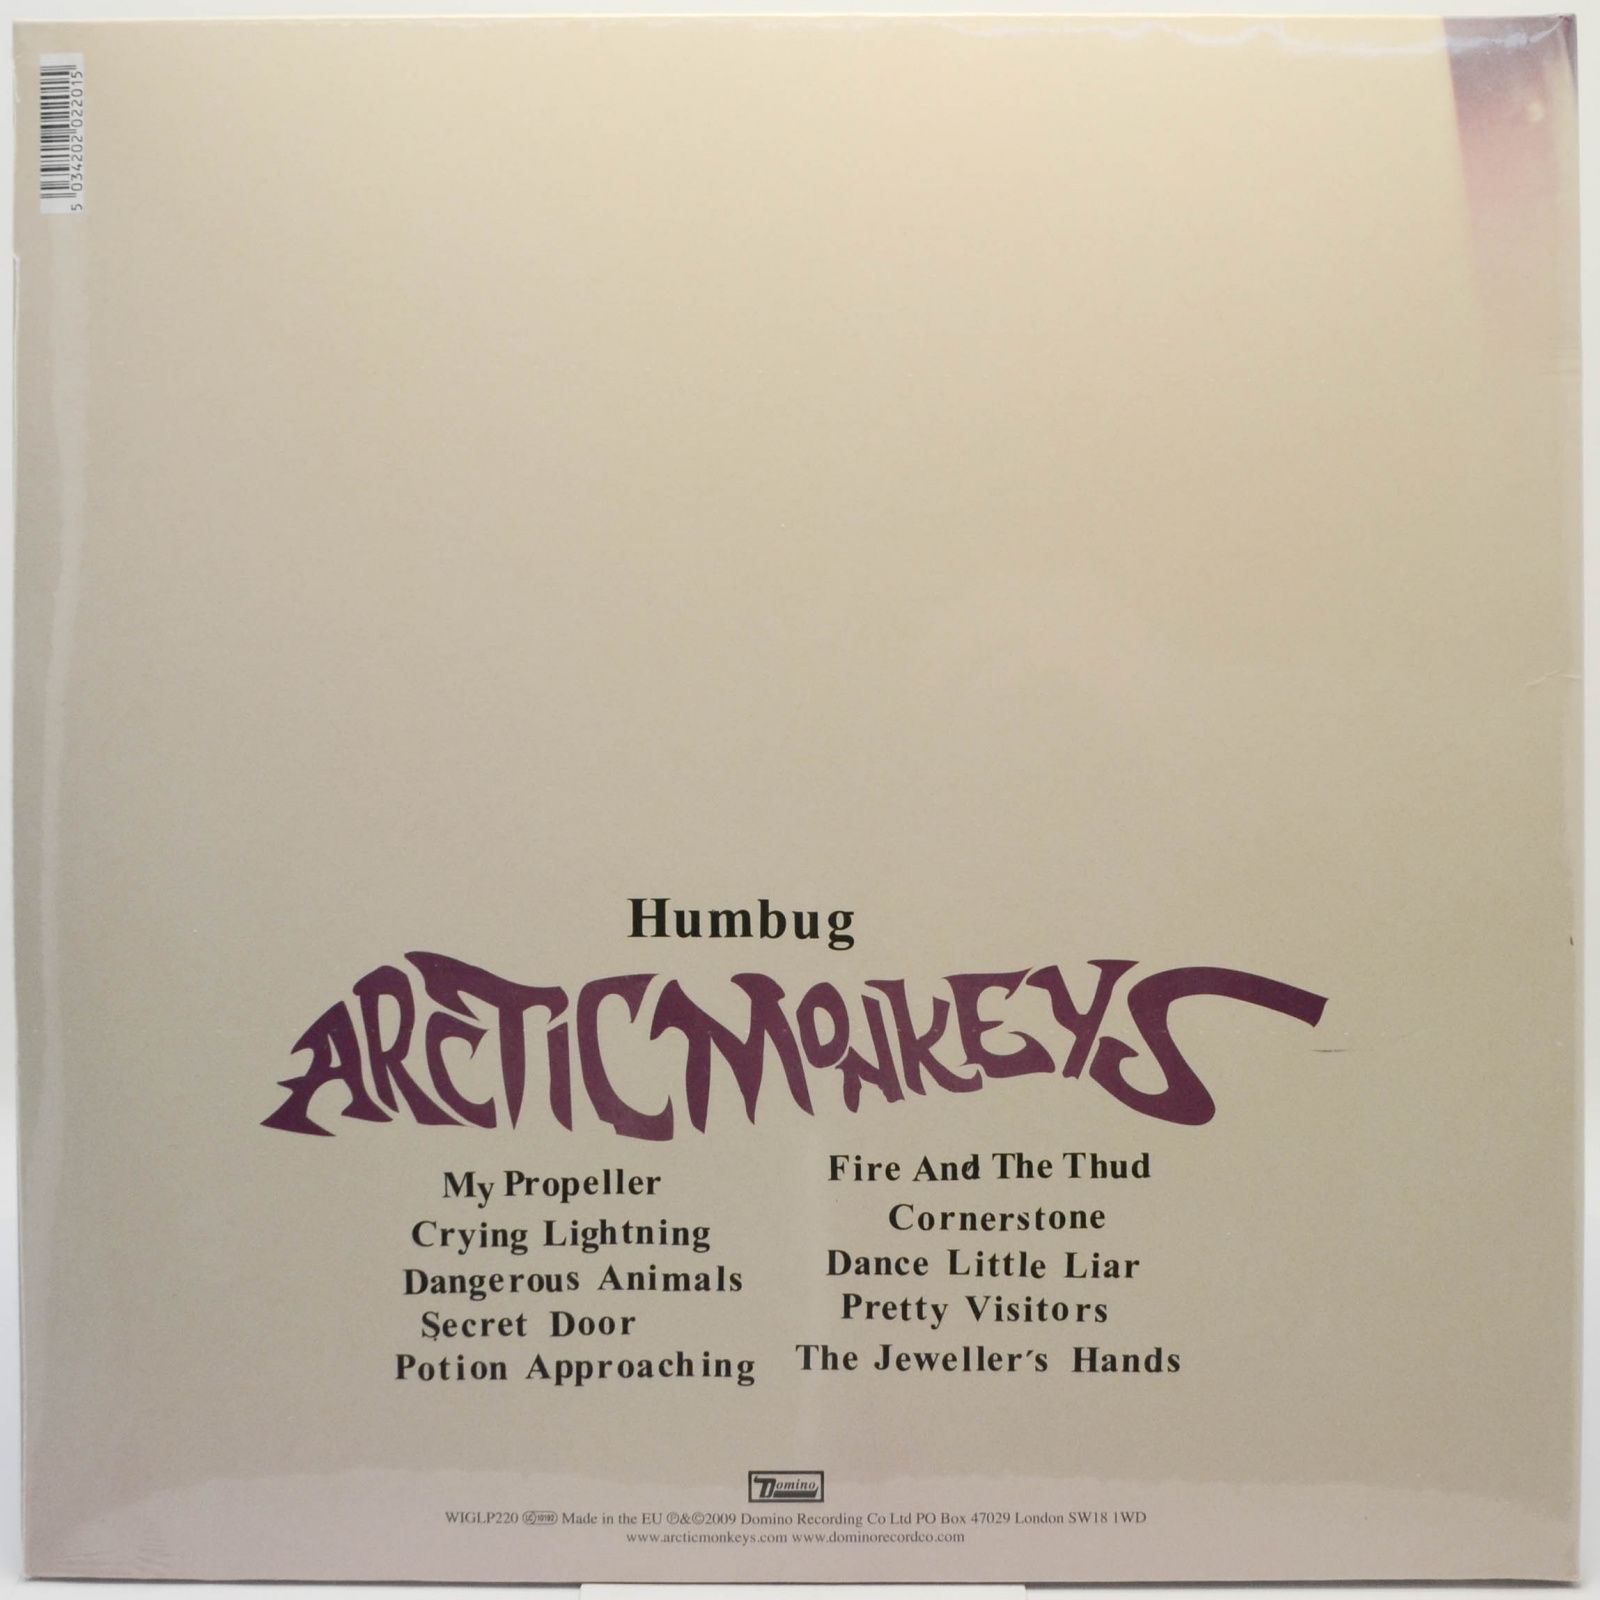 Arctic Monkeys — Humbug, 2009